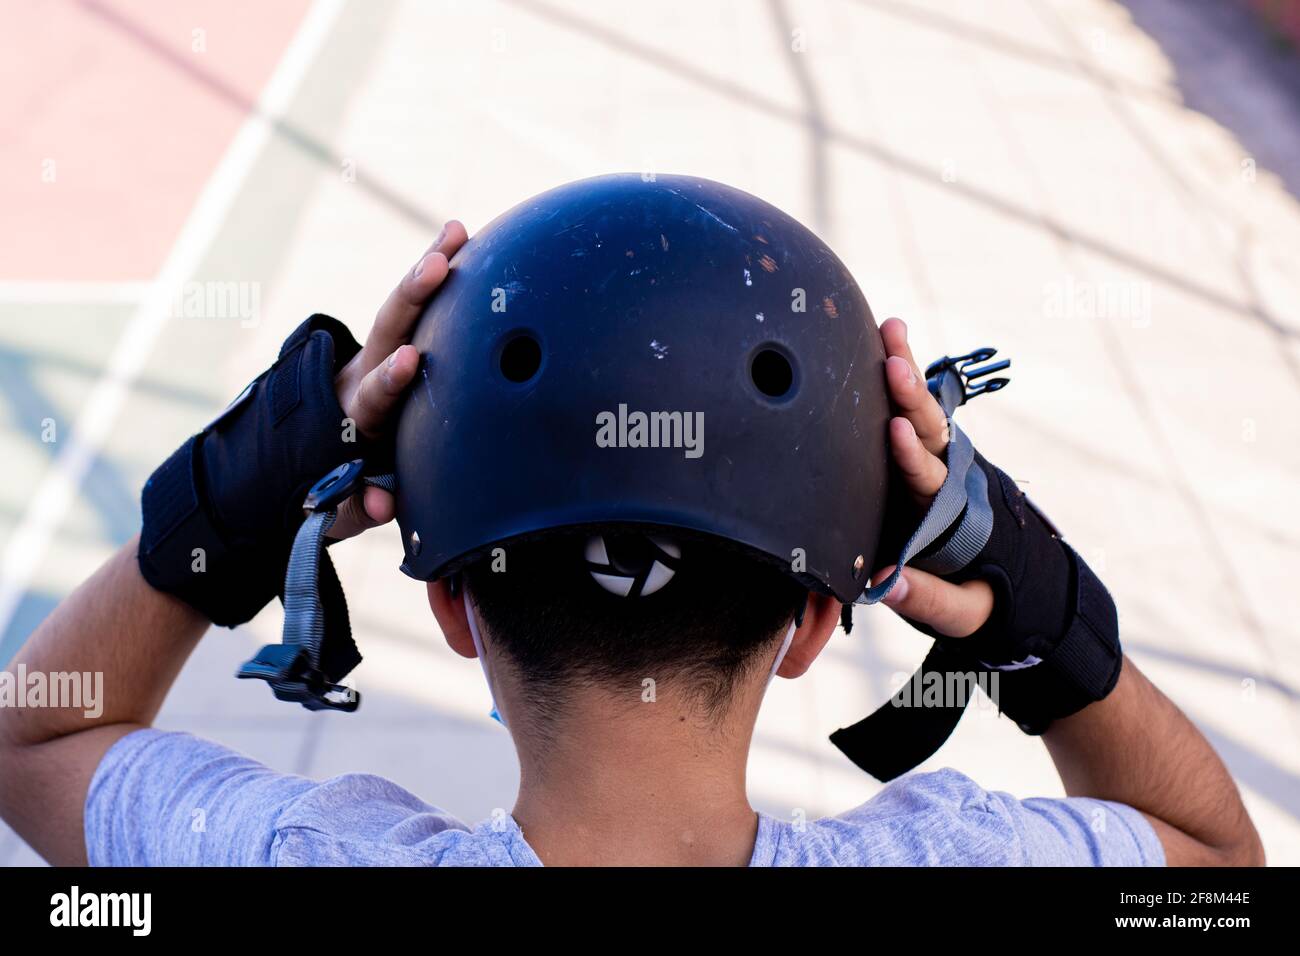 Primo piano da dietro di un pretesto che indossa il casco, preparandosi a pattinare. Foto Stock